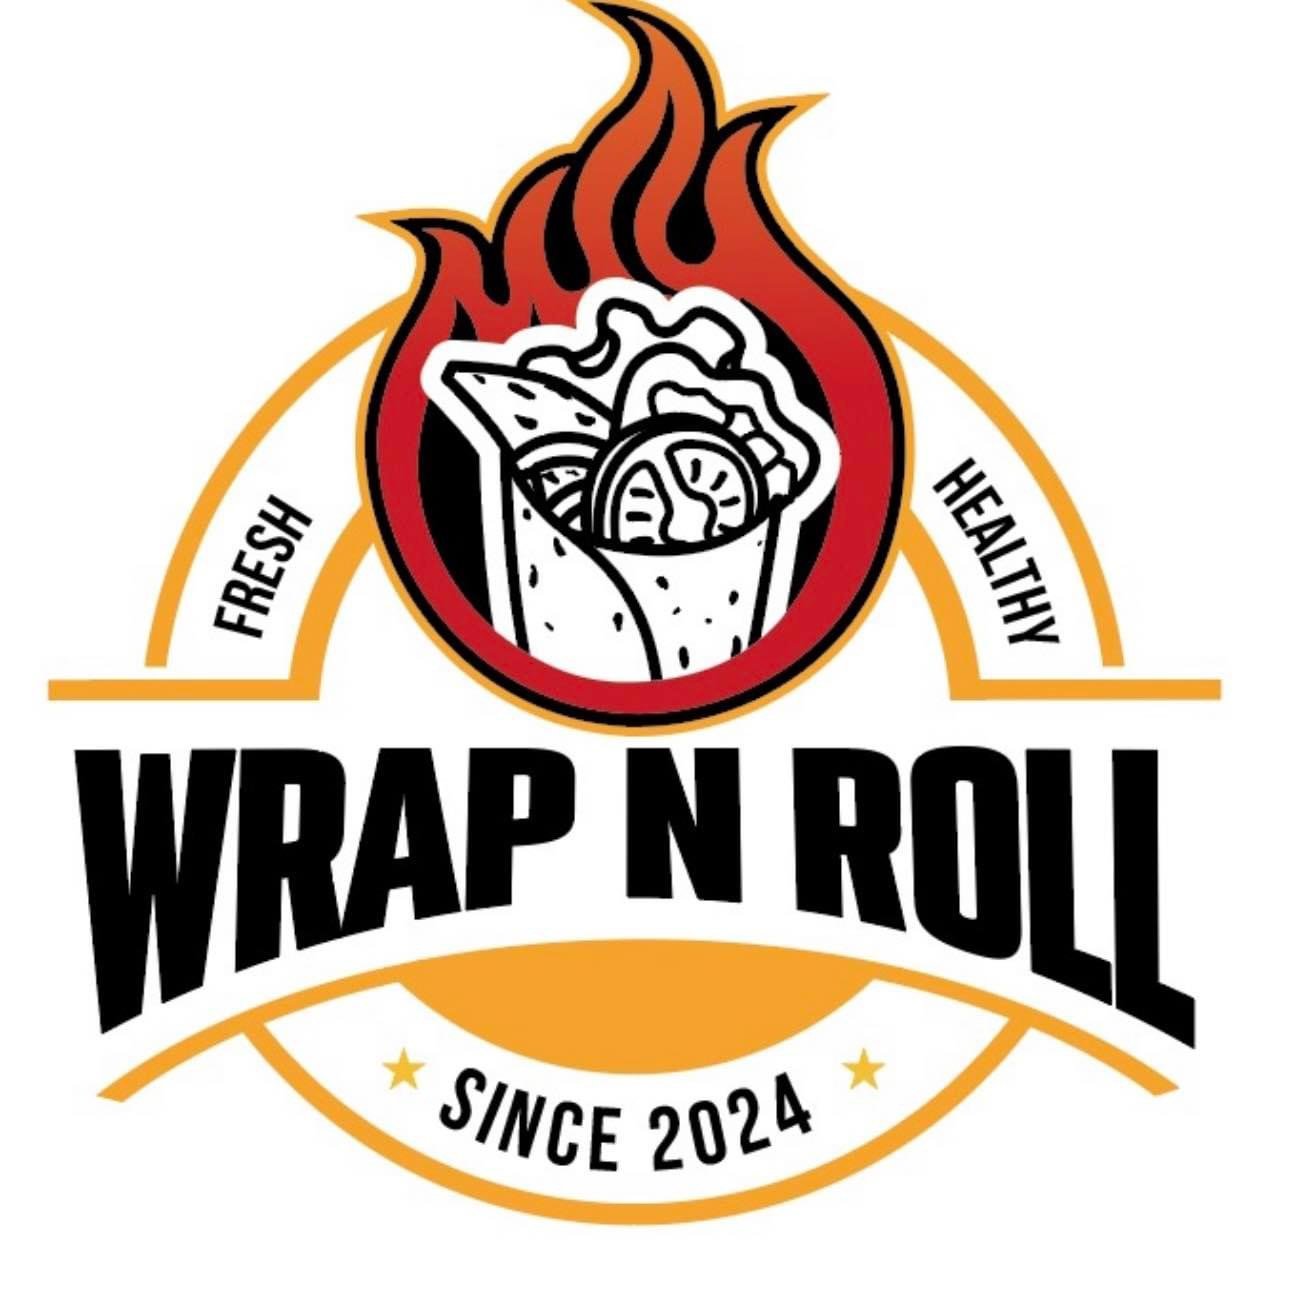 Wrap n roll